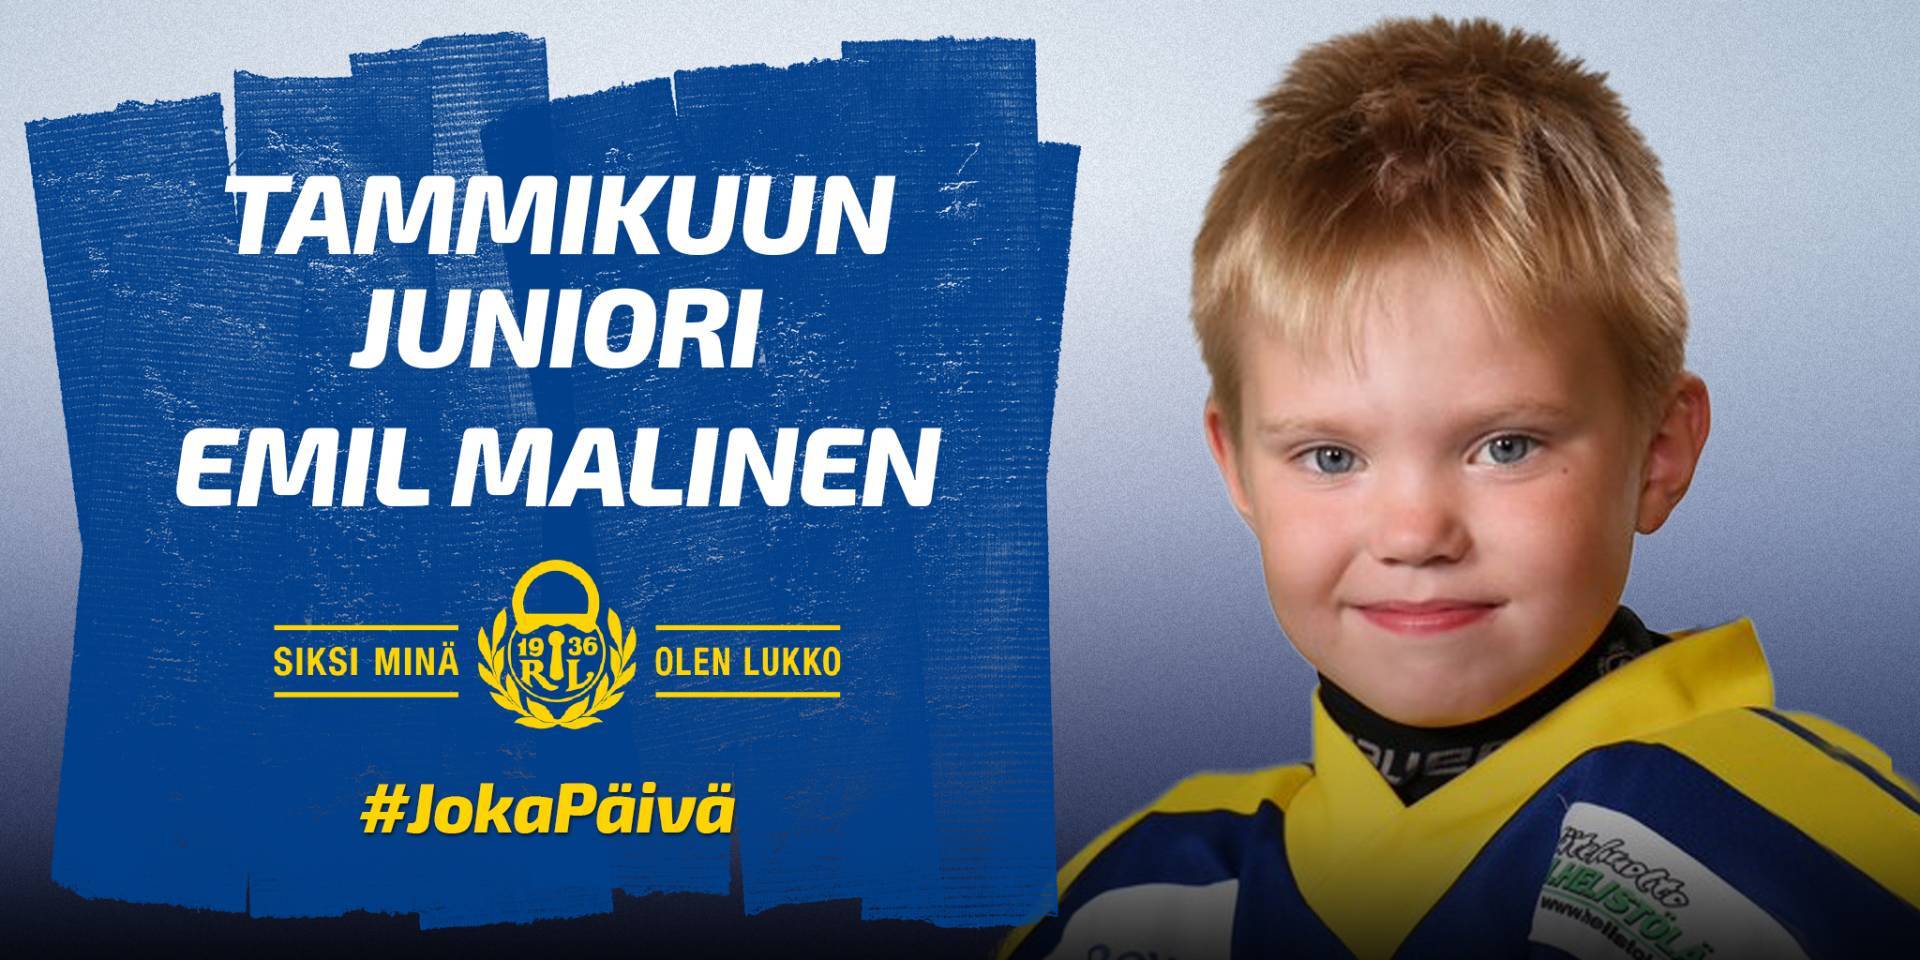 Lukon tammikuun kuukauden juniori on F1-09 -juniorien Emil Malinen